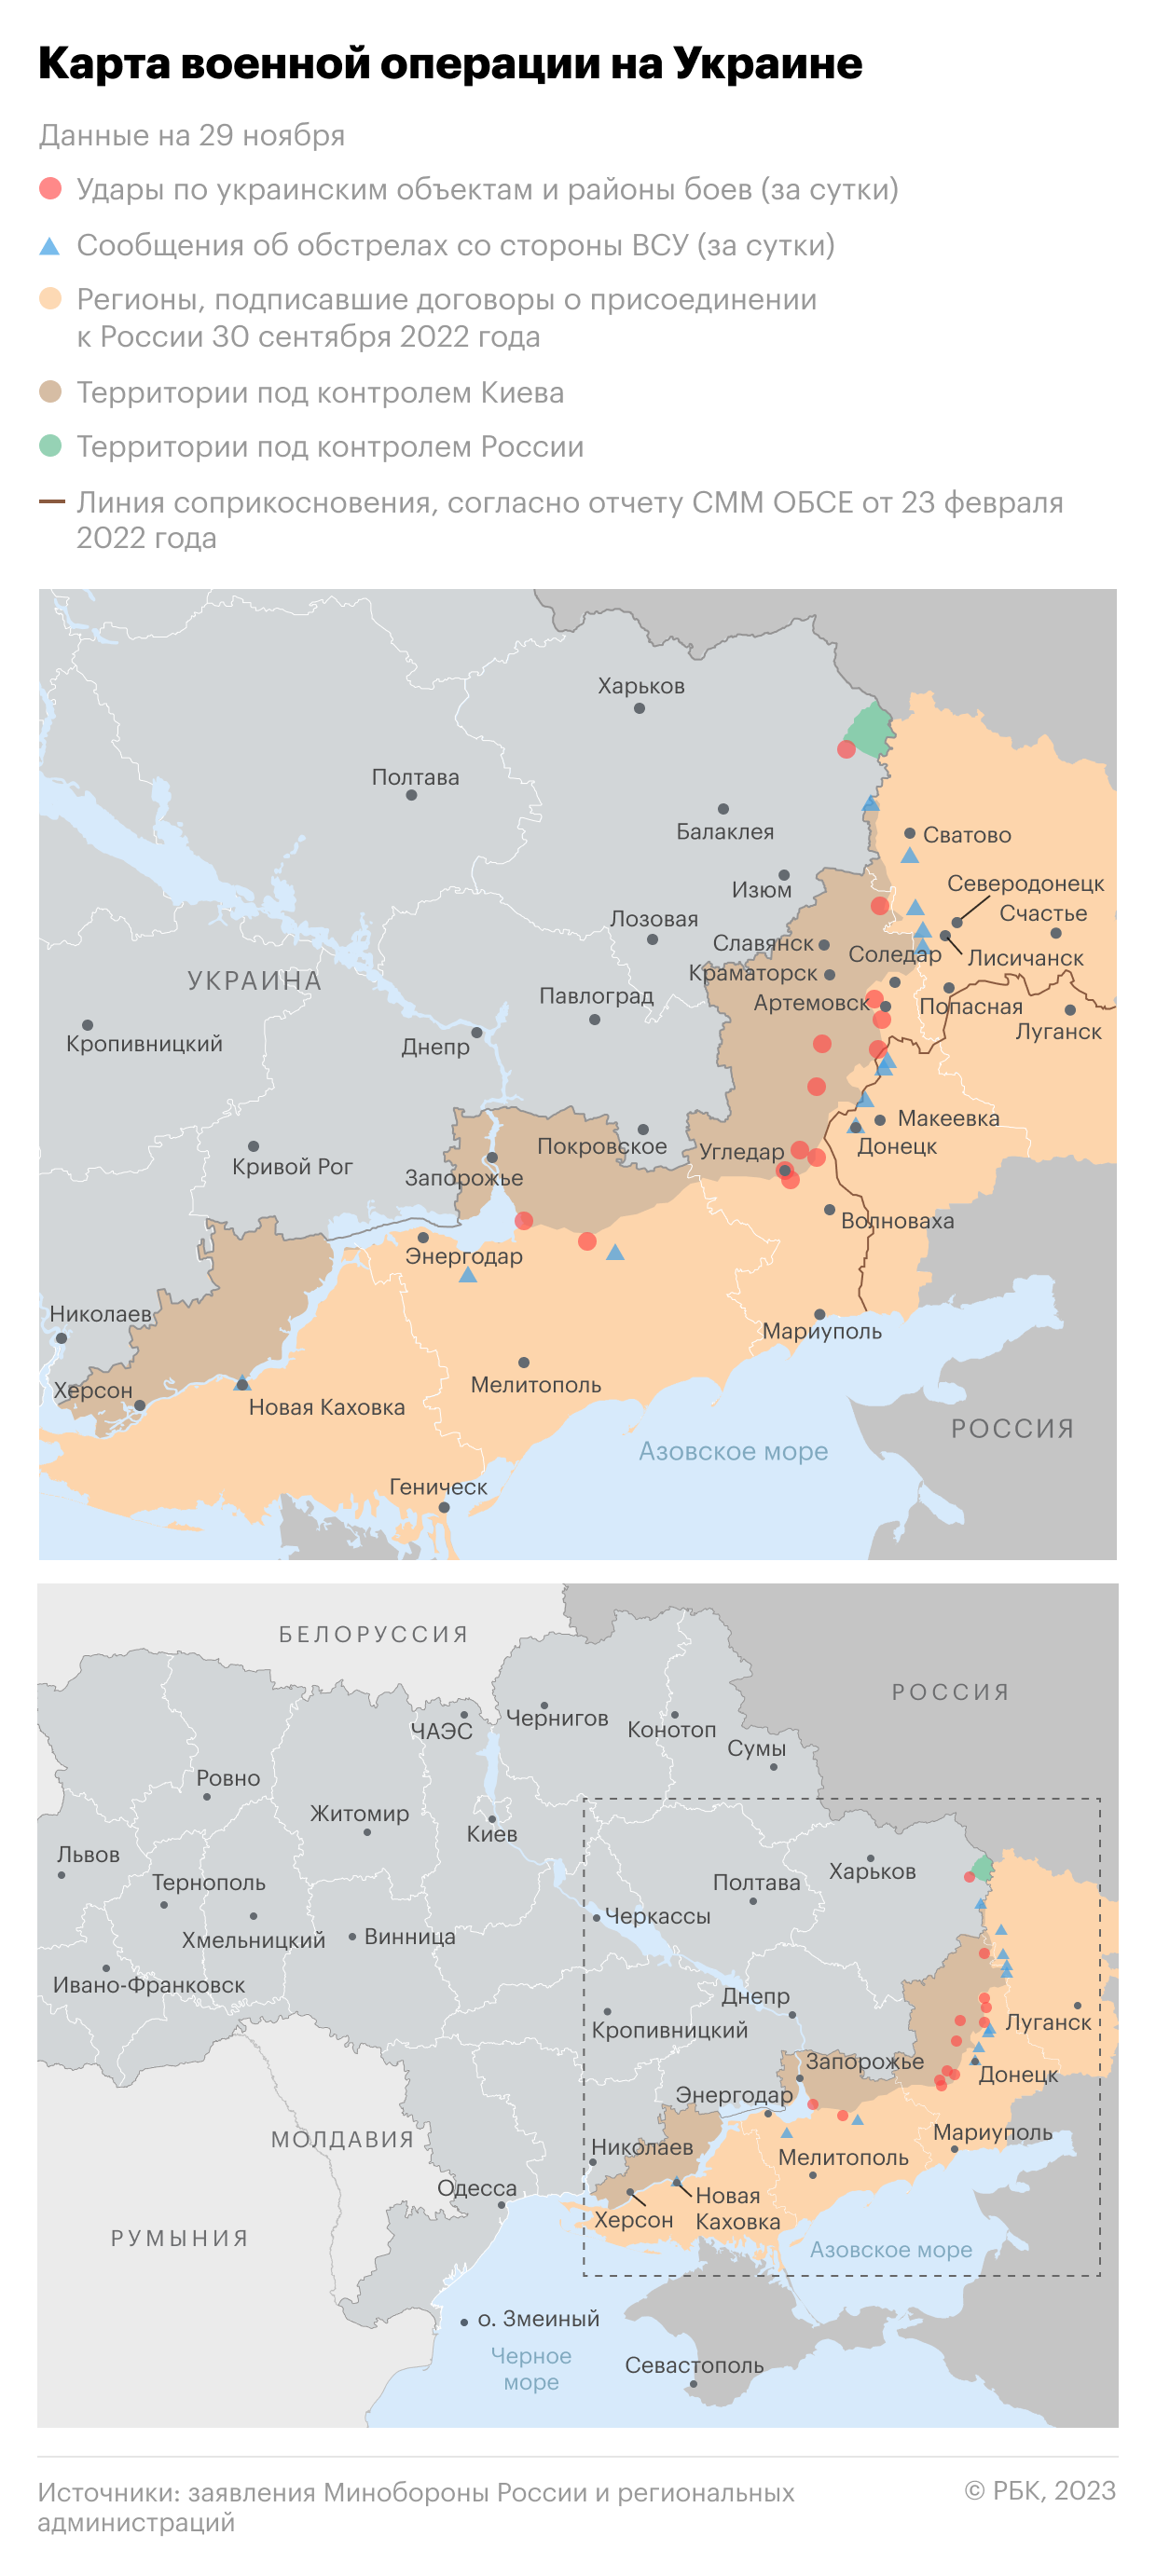 Военная операция на Украине. Карта на 29 ноября